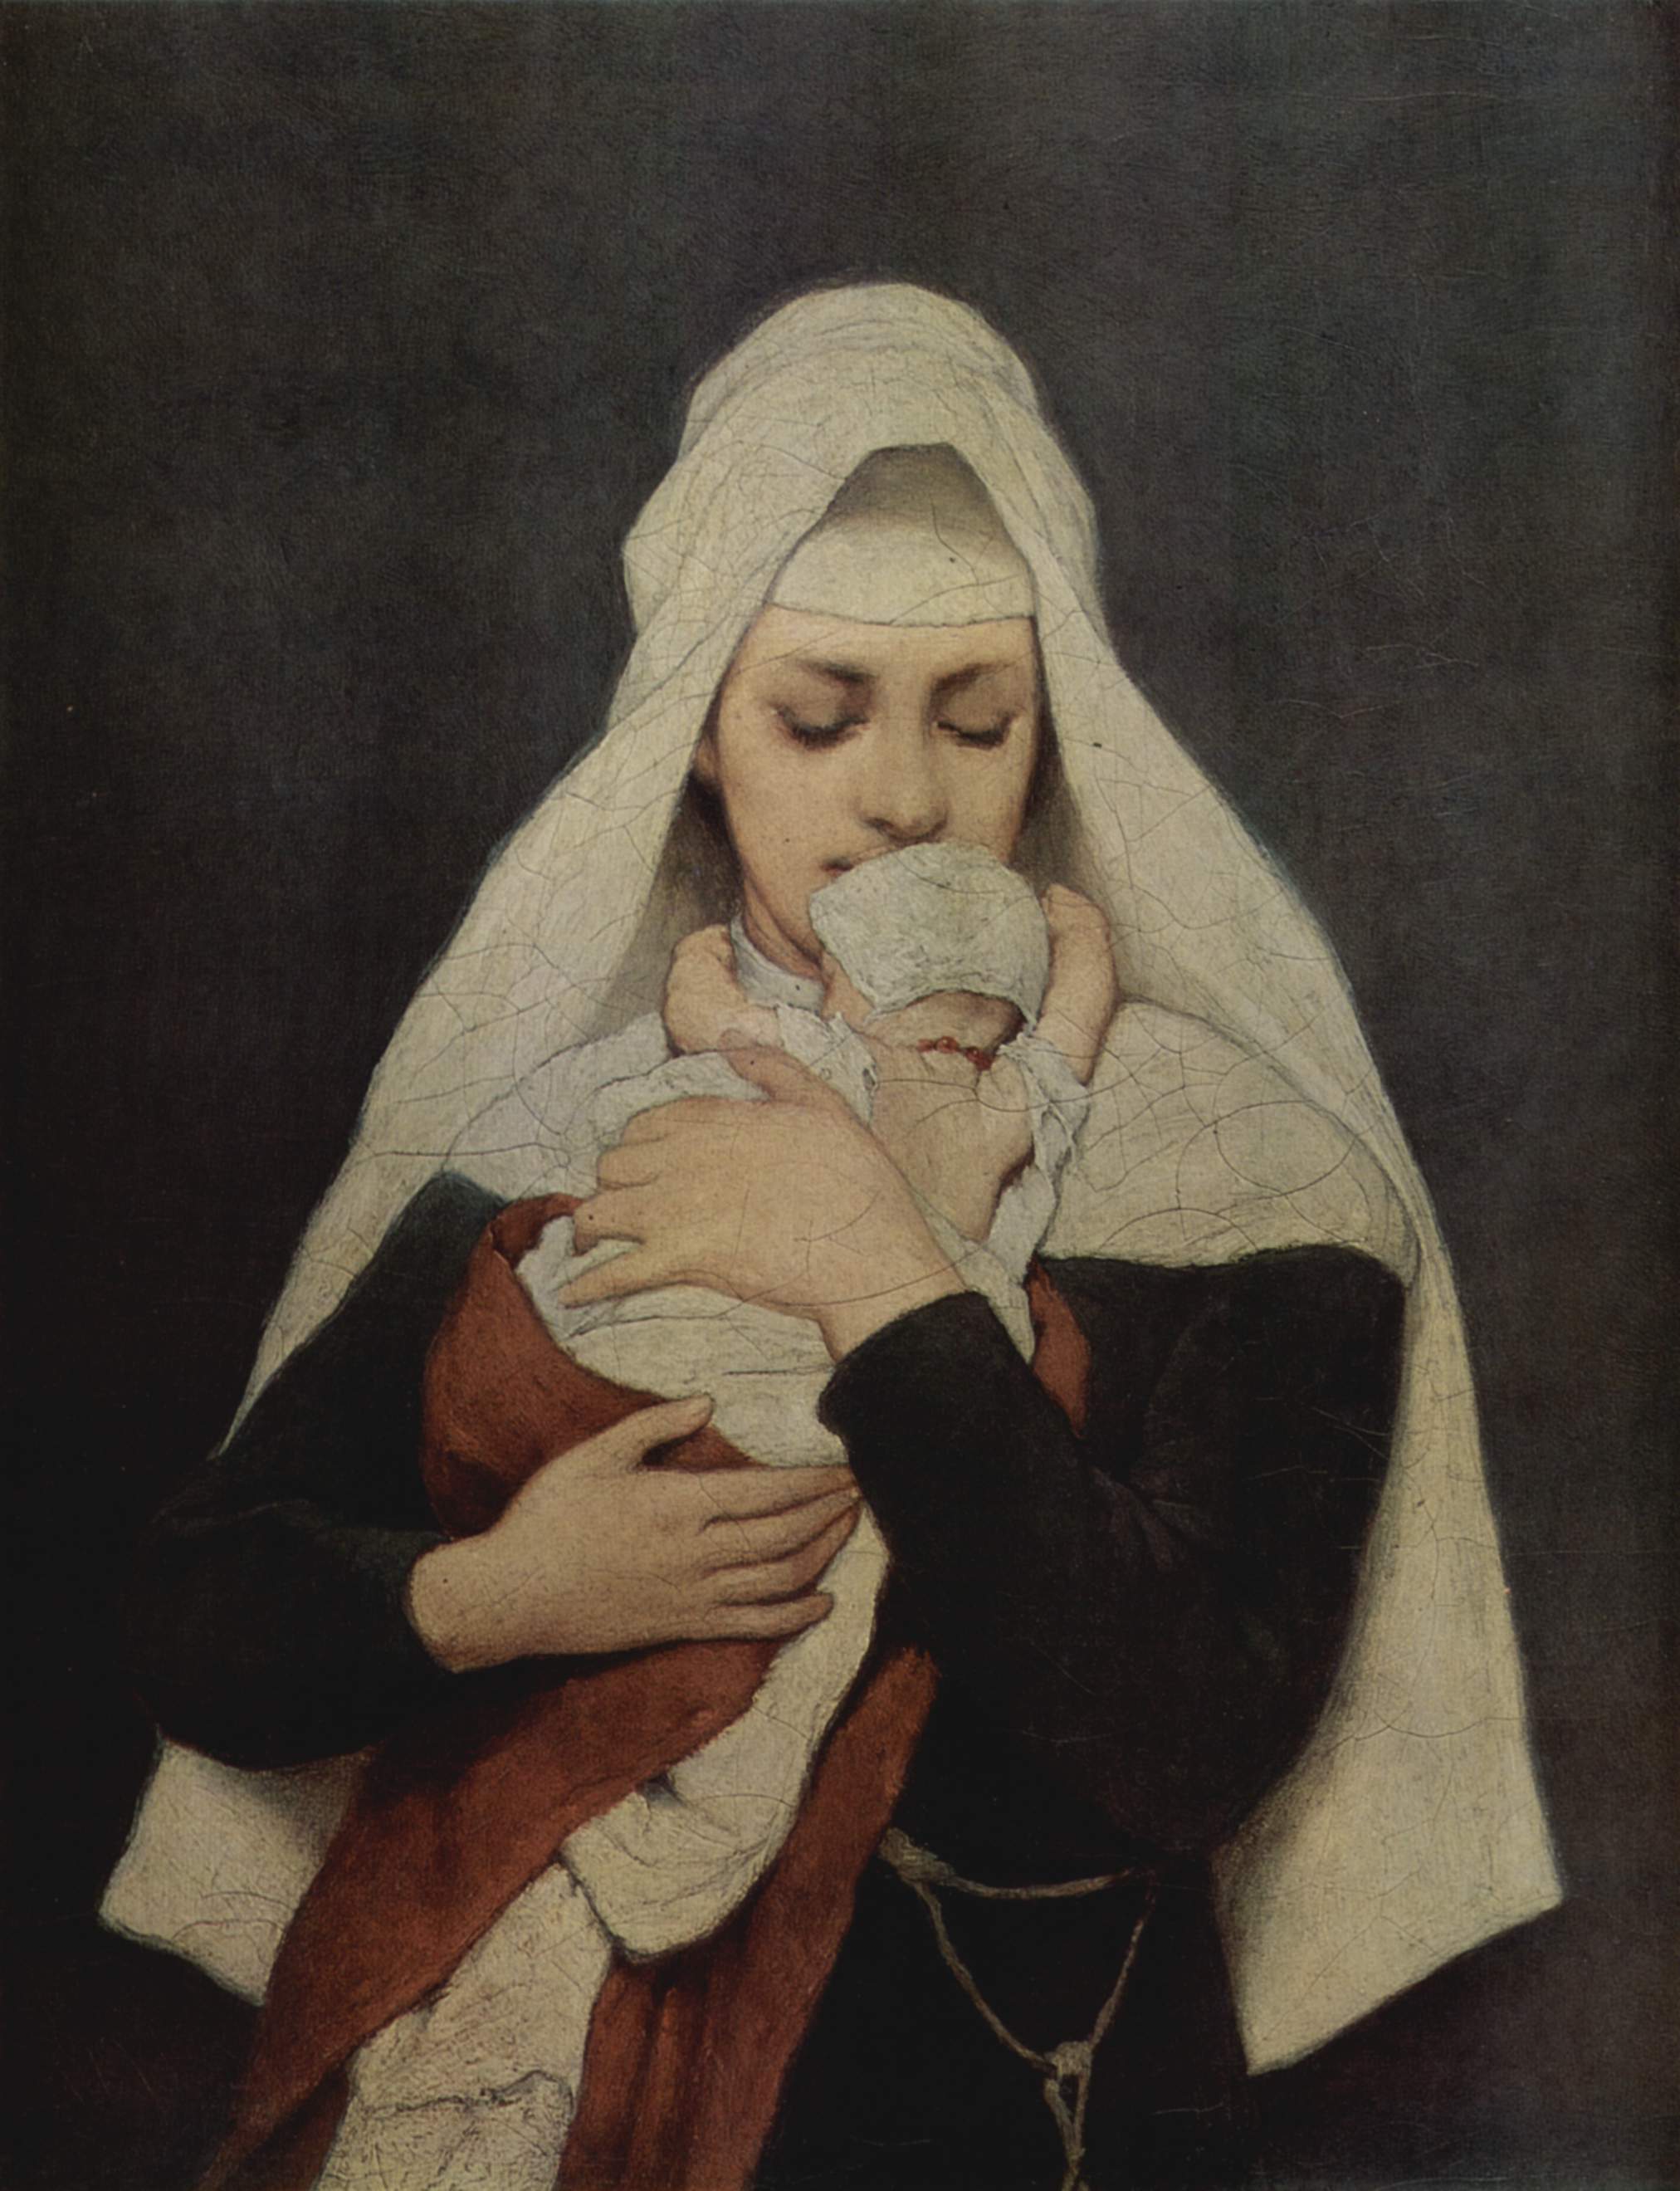 弃婴 by 加布里埃尔 马克思 - 1870-1880 - 32,5 x 25,5 cm 艾尔米塔什博物馆